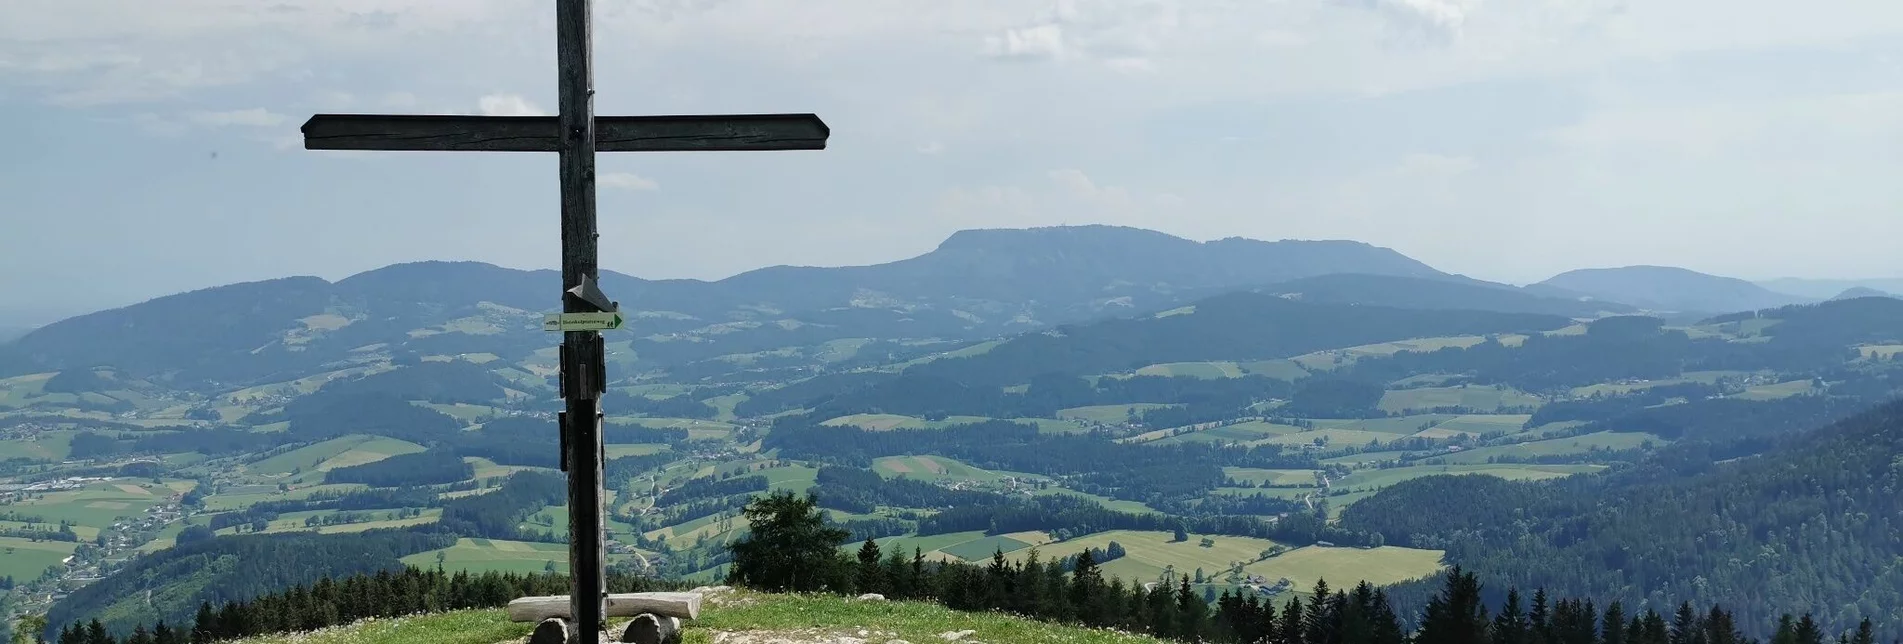 Wanderung Gerler-Runde, Nechnitz - Touren-Impression #1 | © Oststeiermark Tourismus